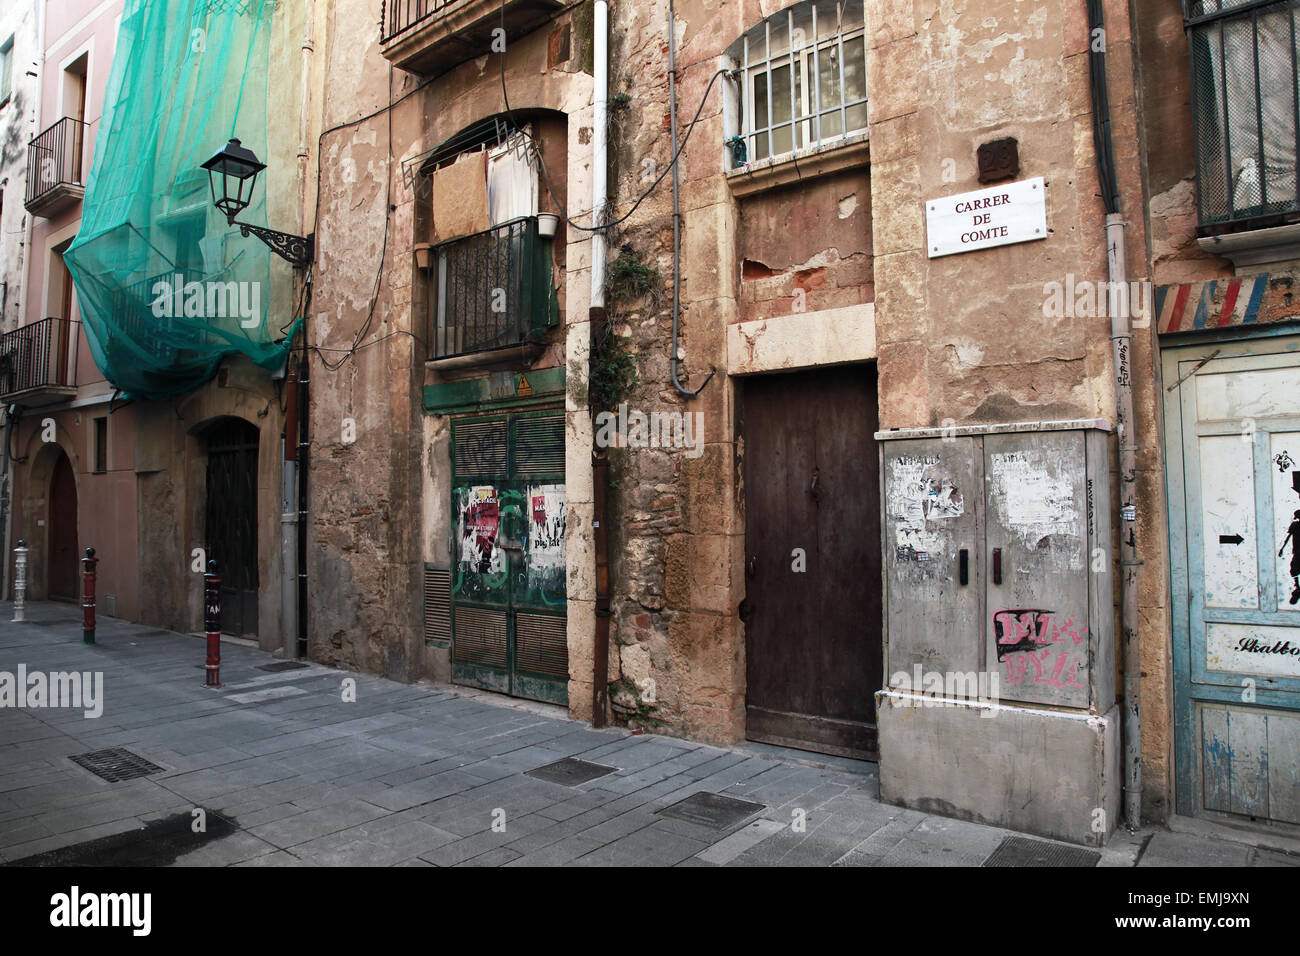 Tarragone, Espagne - 16 août 2014 : façades de bâtiment ancien sur l'étroite rue de Tarragone Ville Espagnole Banque D'Images